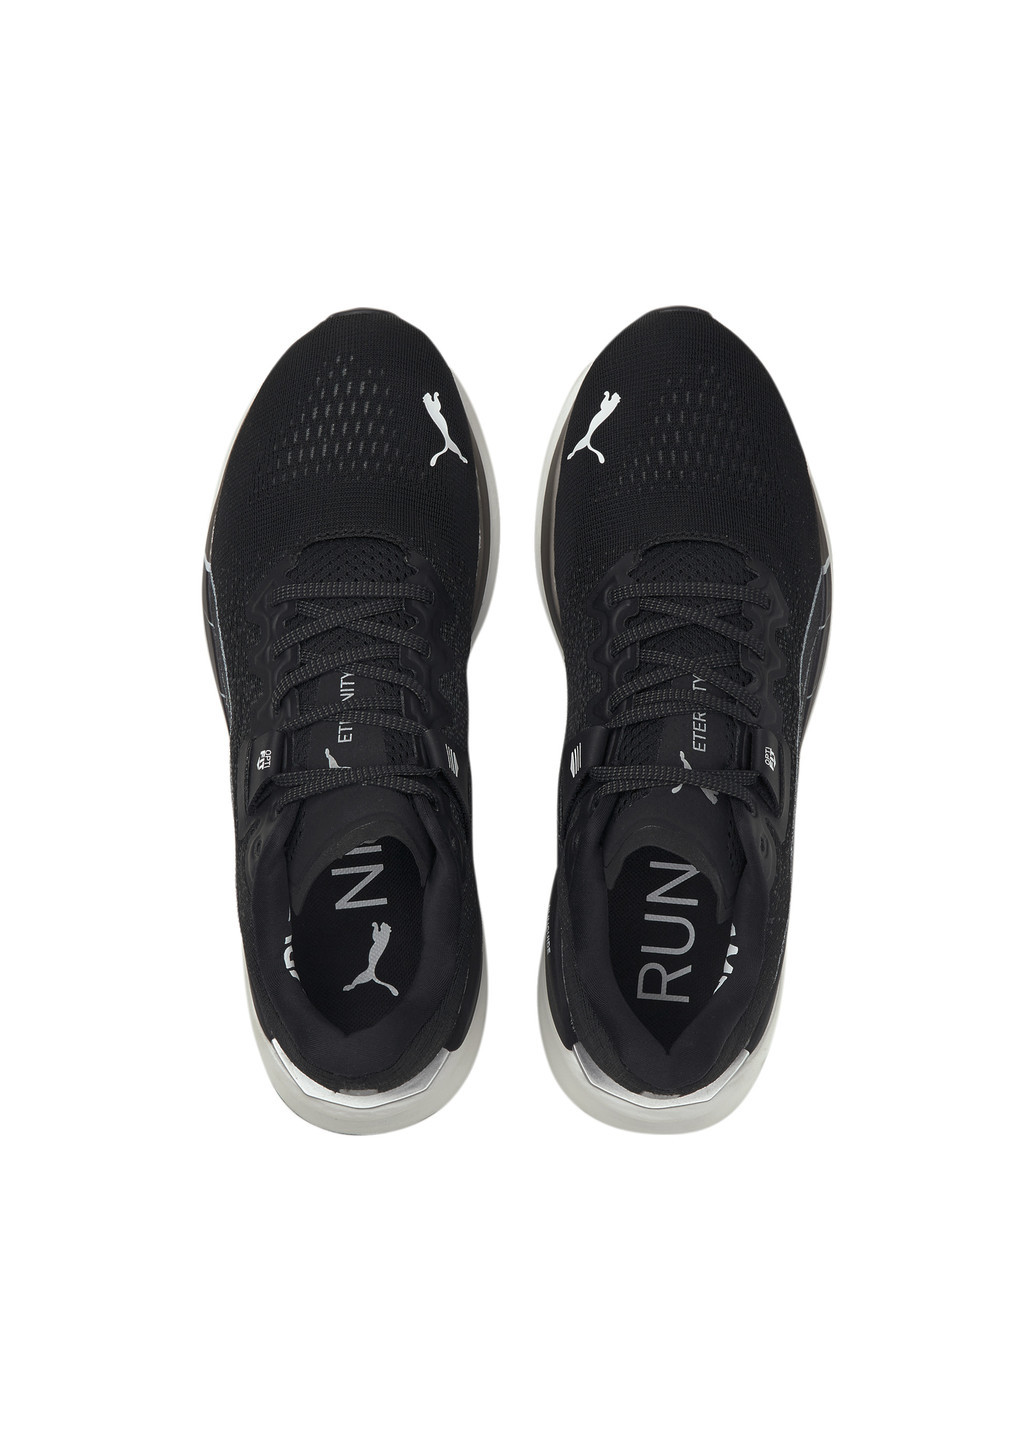 Черные всесезонные кроссовки eternity nitro men's running shoes Puma